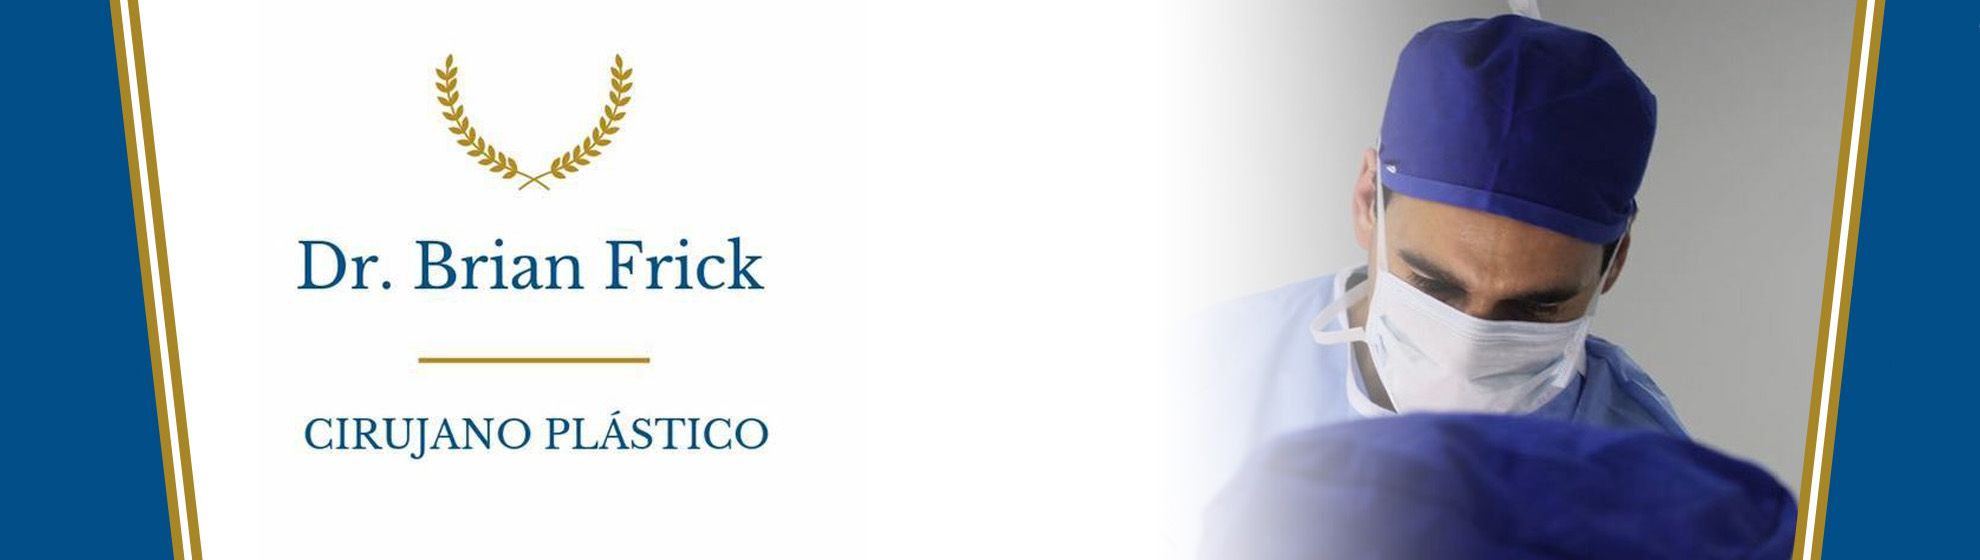 Dr. Brian Frick Especialista en Cirugía Plástica y Reconstructiva